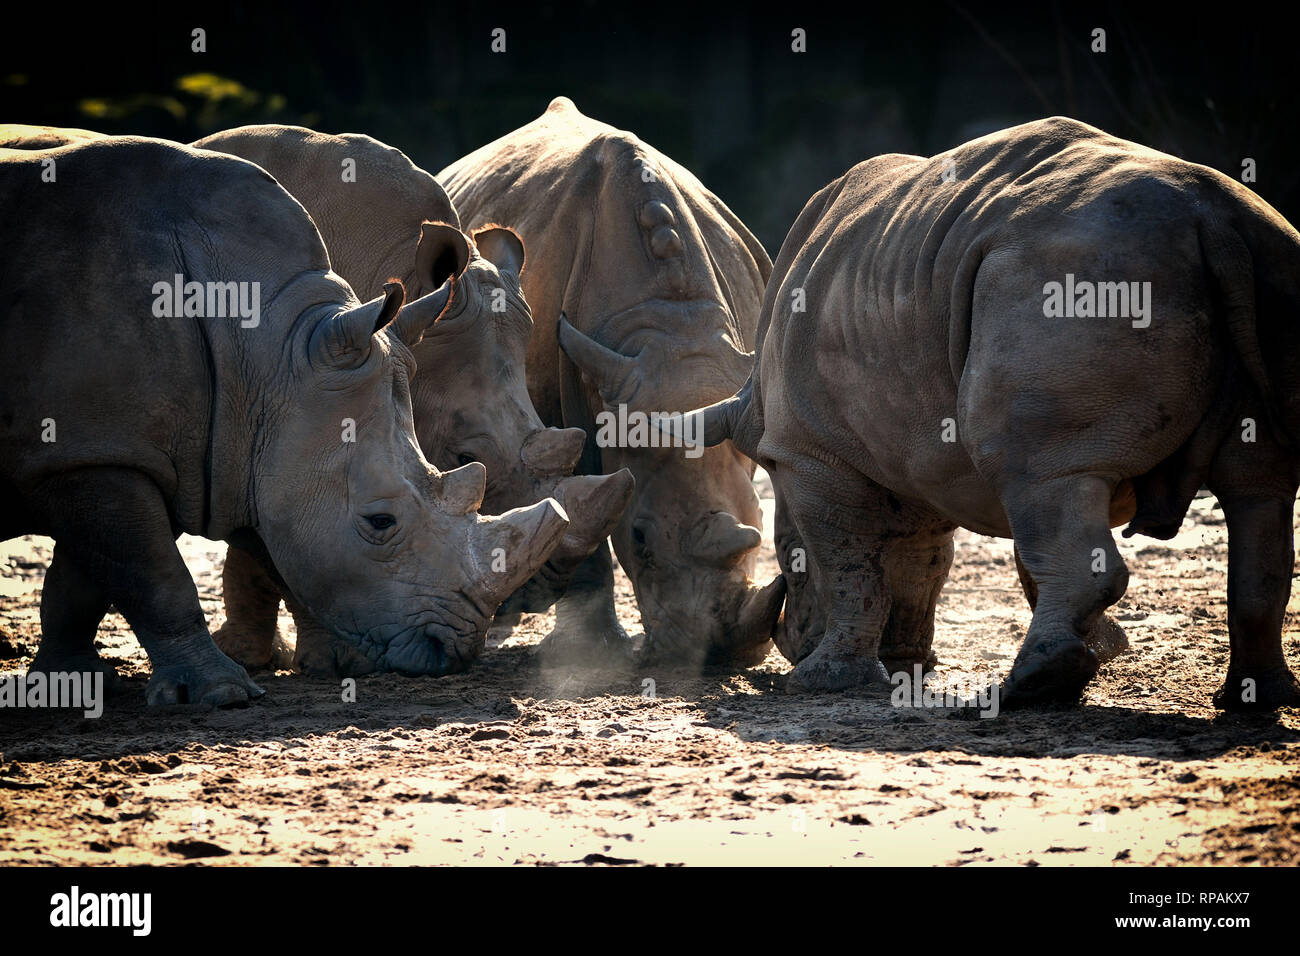 Dvur Kralove nad Labem, República Checa. 21 Feb, 2019. Un rinoceronte negro, bañarse en el barro en el Parque Safari Dvur Kralove nad Labem en una soleada mañana, 21 de febrero de 2019. El Parque Safari Dvur Kralove, está preparando la transferencia de cinco rinocerontes negros raros procedentes de zoológicos europeos, incluidos sus tres propios, a Rwanda. Aparte de tres rinocerontes en Dvur Kralove, la transferencia, prevista para finales de mayo o principios de junio de 2019, contará con la participación de Gran Bretaña Flamingo Land zoo y uno de la Danish Ree Parque Zoológico Safari. Crédito: Slavek Ruta/Zuma alambre/Alamy Live News Foto de stock